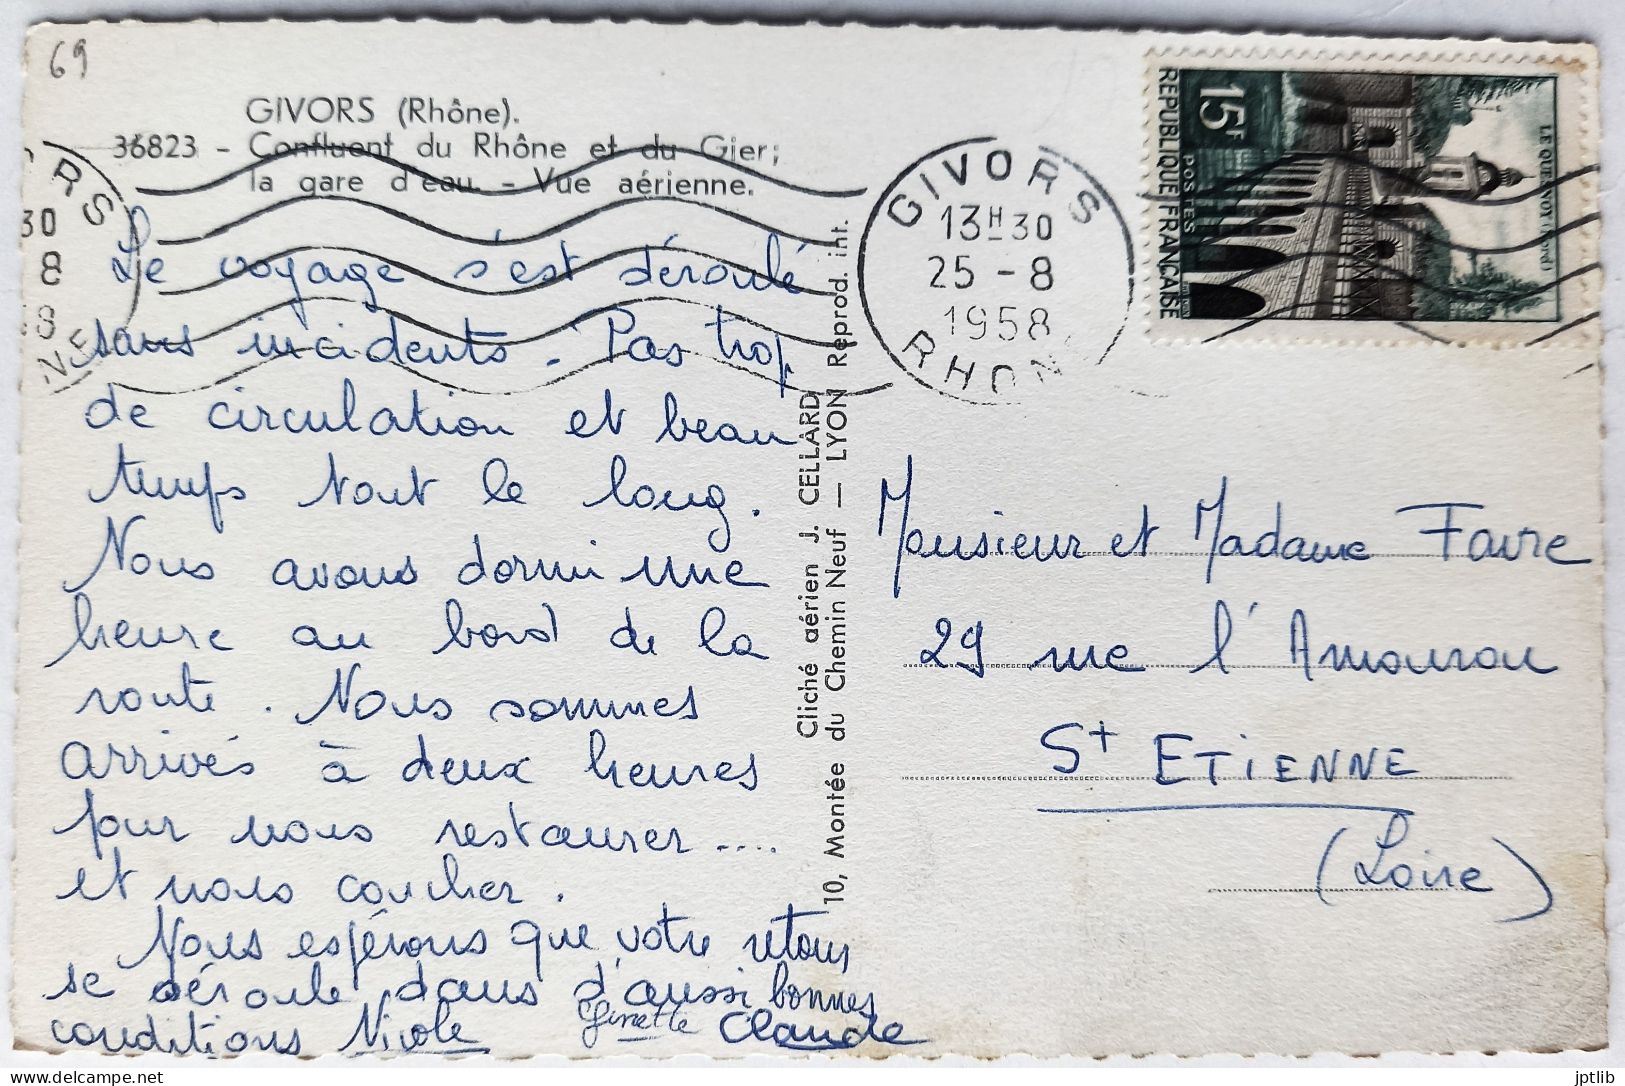 CPSM Carte Postale / 69 Rhône, Givors / Cellard - 36823 / Confluent Du Rhône Et Du Gier; La Gare D'eau - Vue Aérienne. - Givors